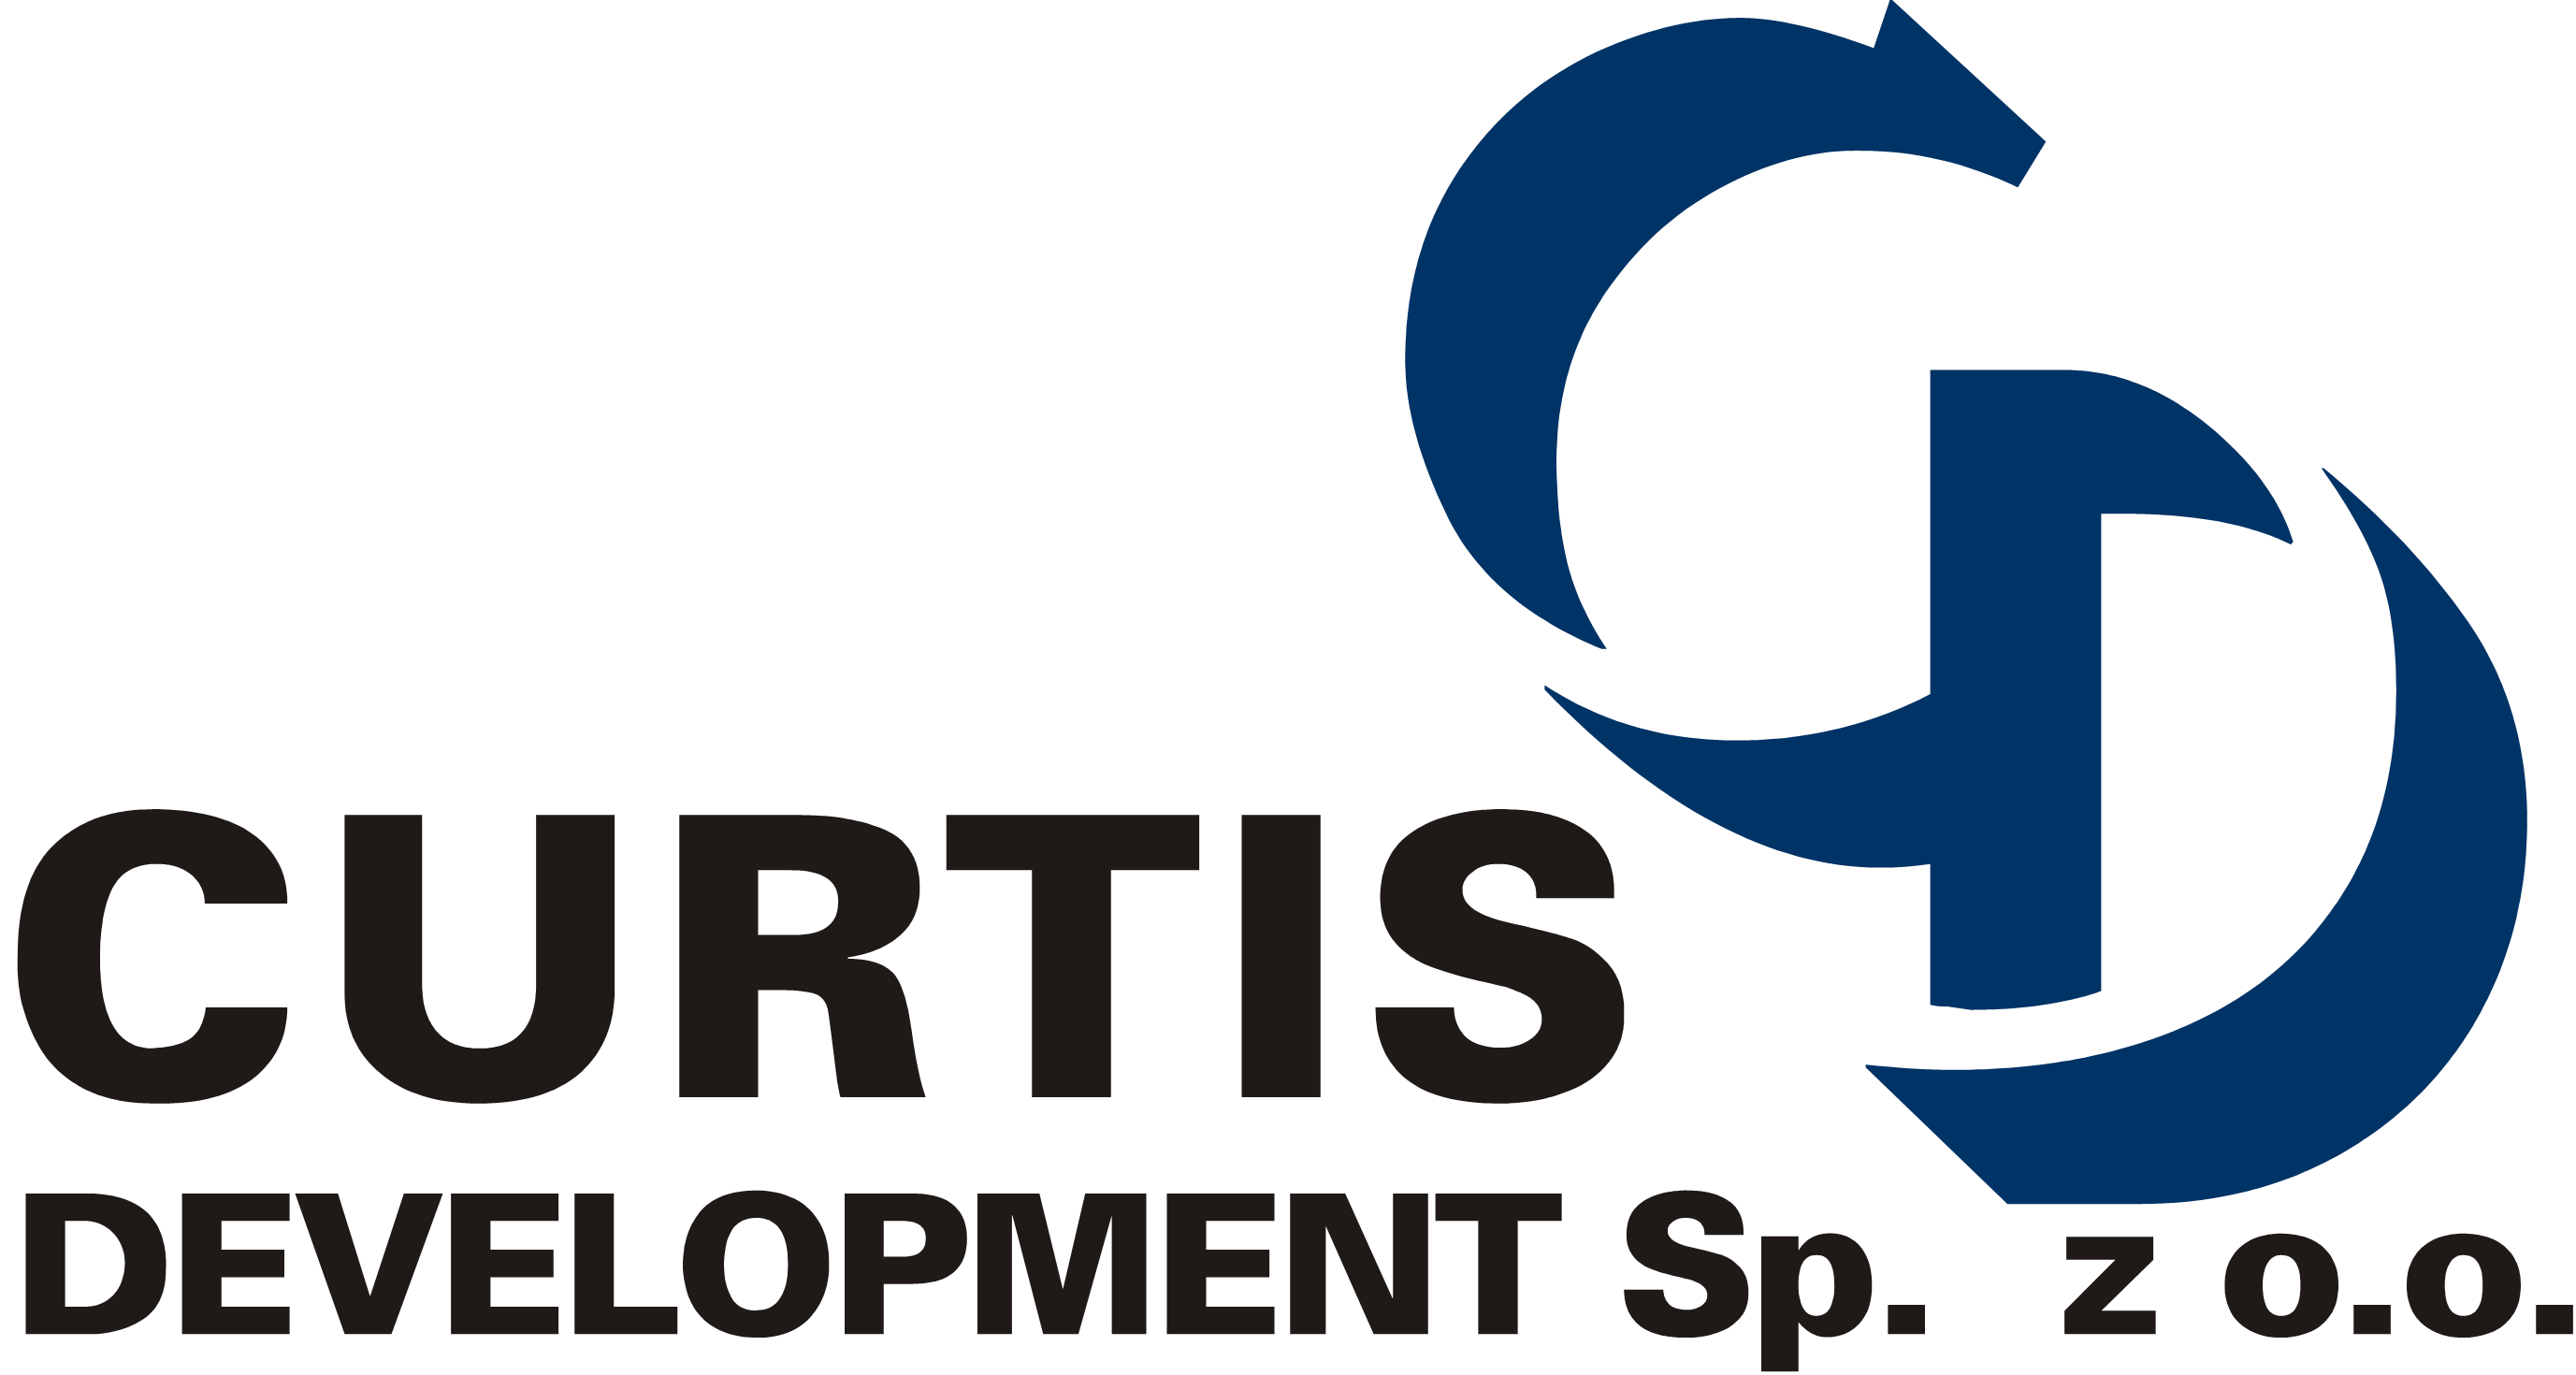 Wtryskownia tworzyw sztucznych | CURTIS Development